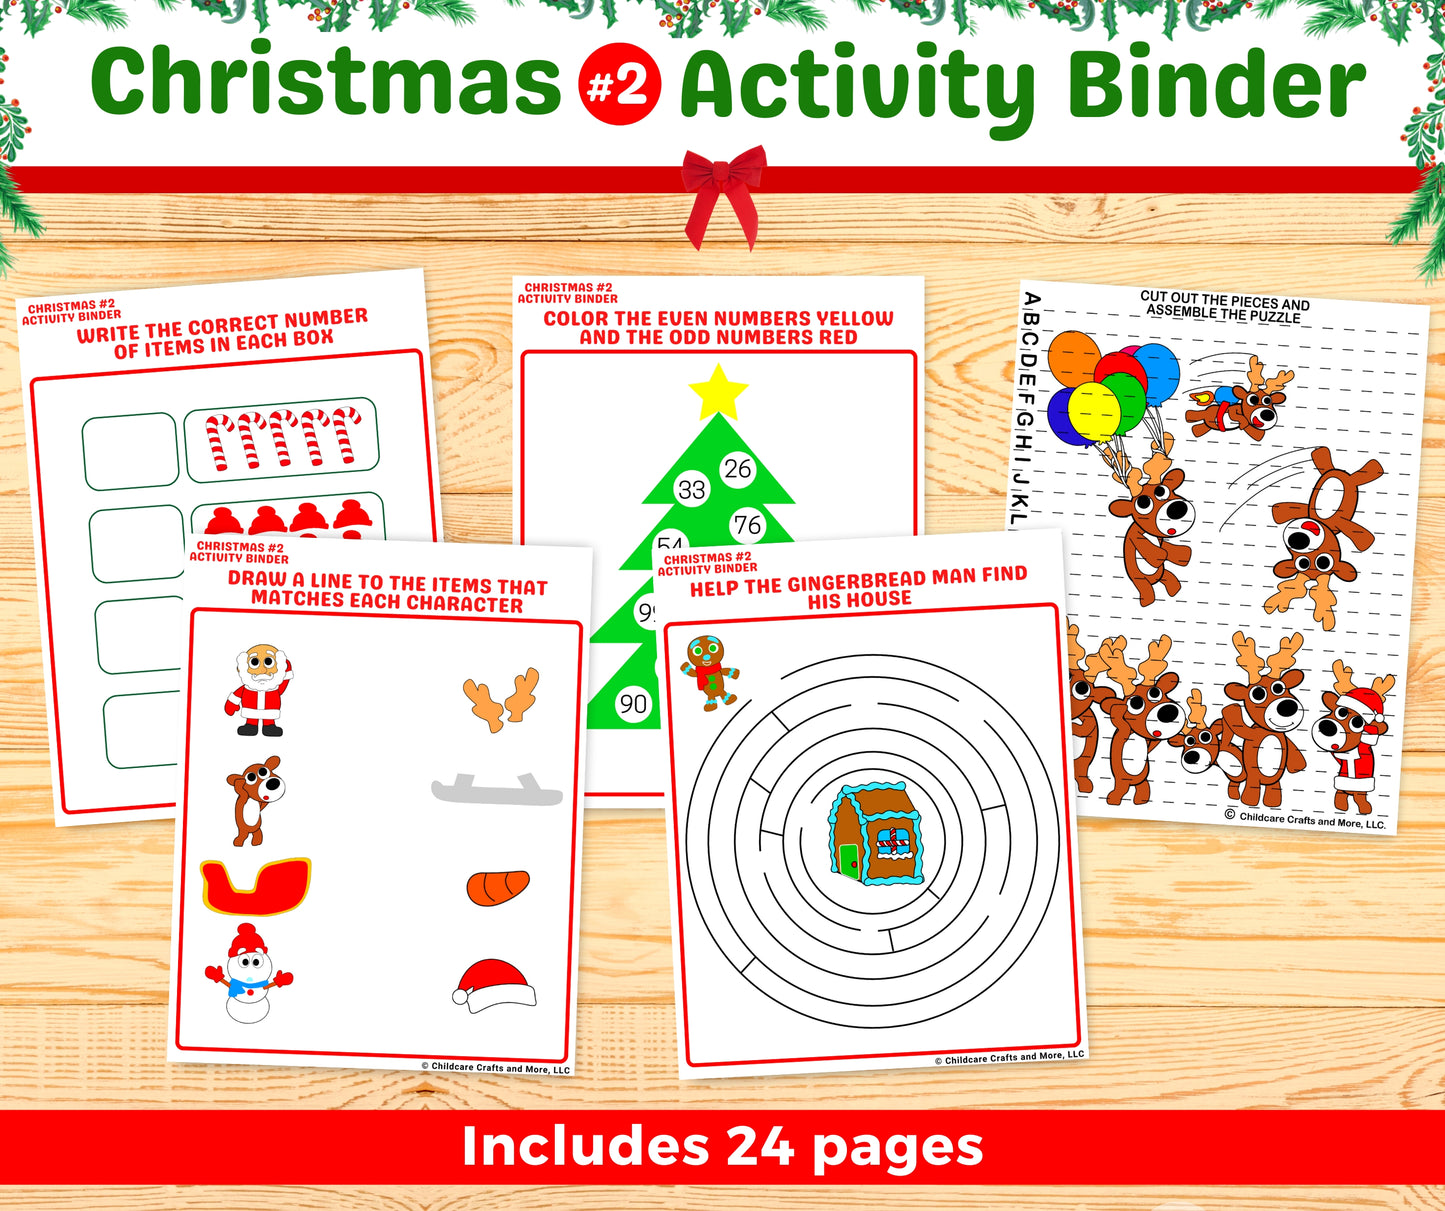 Christmas #2 Activity Binder Download